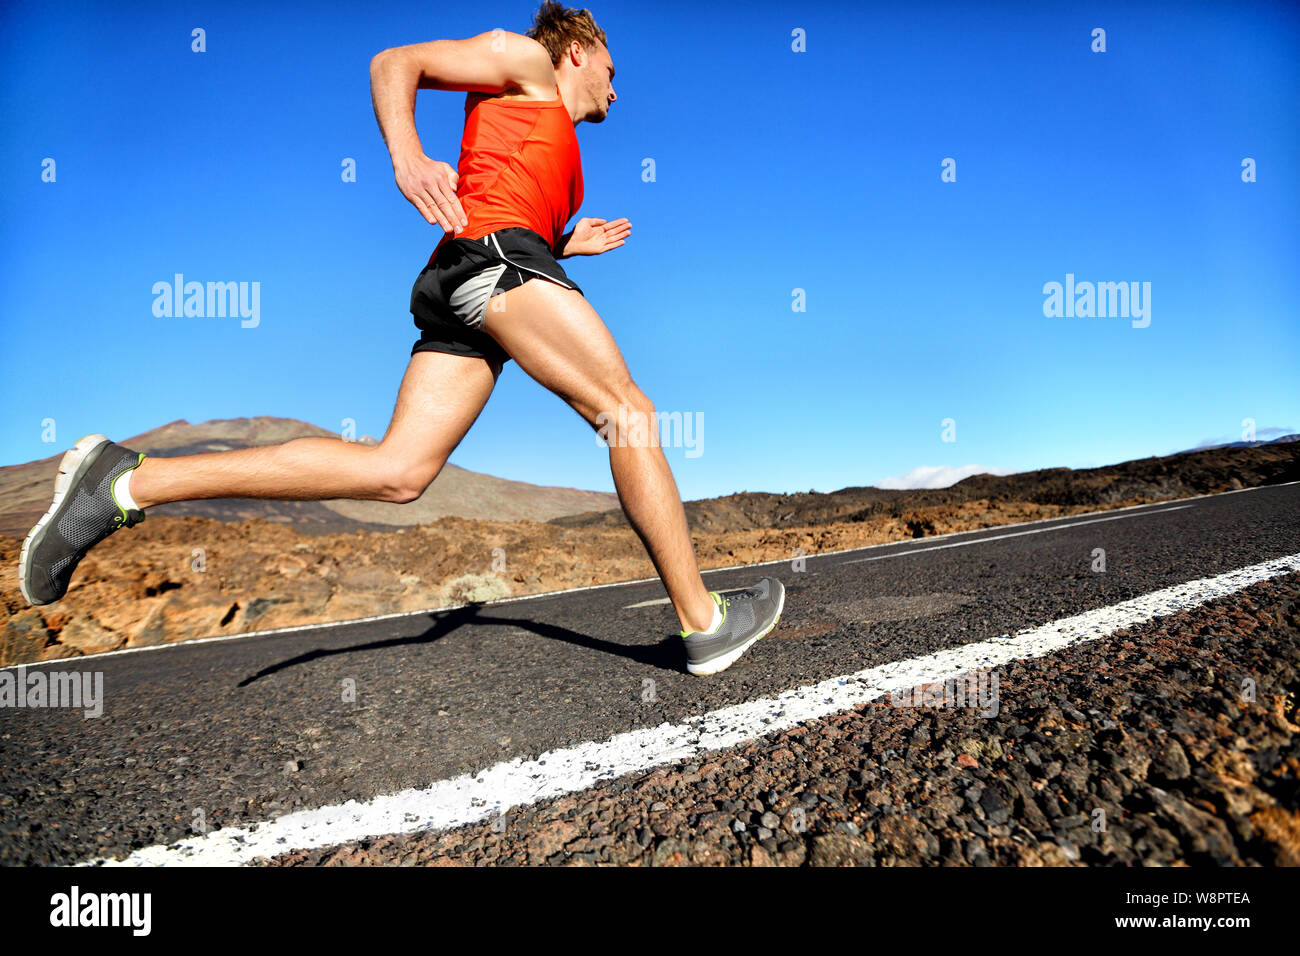 Zweiter Mann laufen Sprint für den Erfolg auf. Männliche Athlet runner Ausbildung bei schneller Geschwindigkeit. Muskulös fit Sport Modell sprinter trainieren Sprint am Mountain Road. Die volle Länge der kaukasischen Modell. Stockfoto